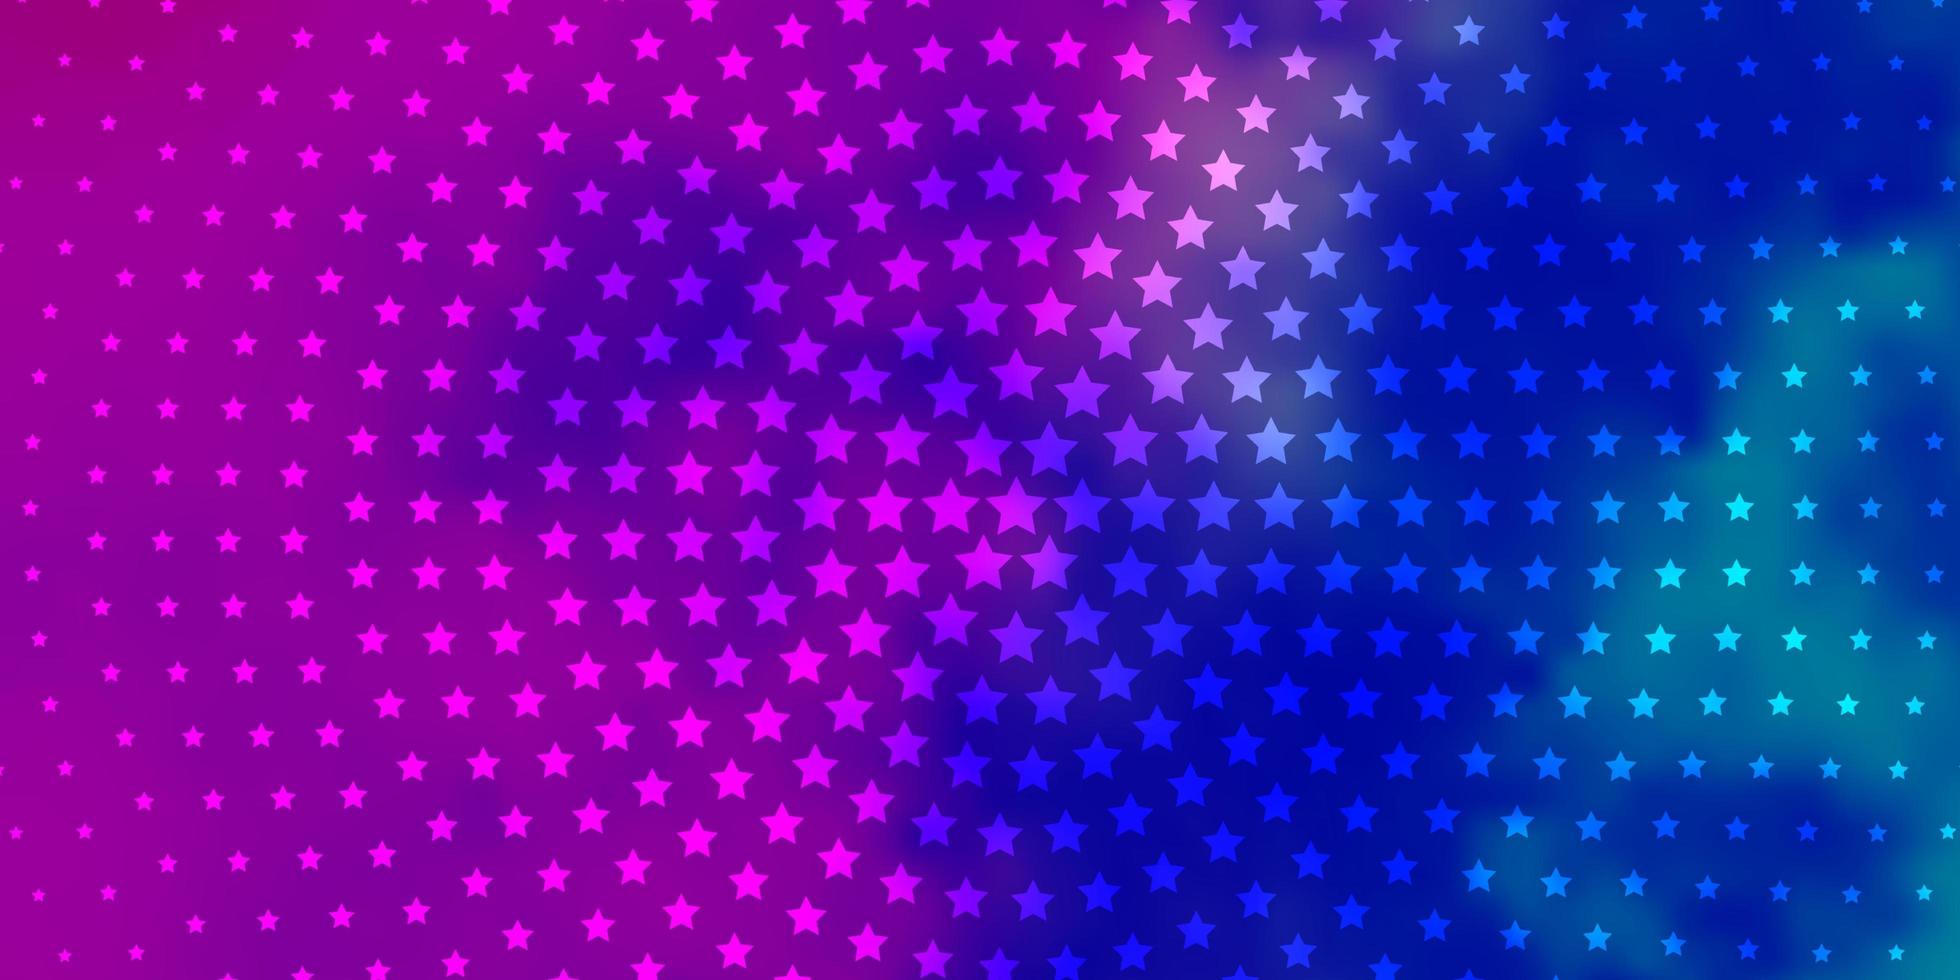 modelo de vetor rosa claro, azul com estrelas de néon.